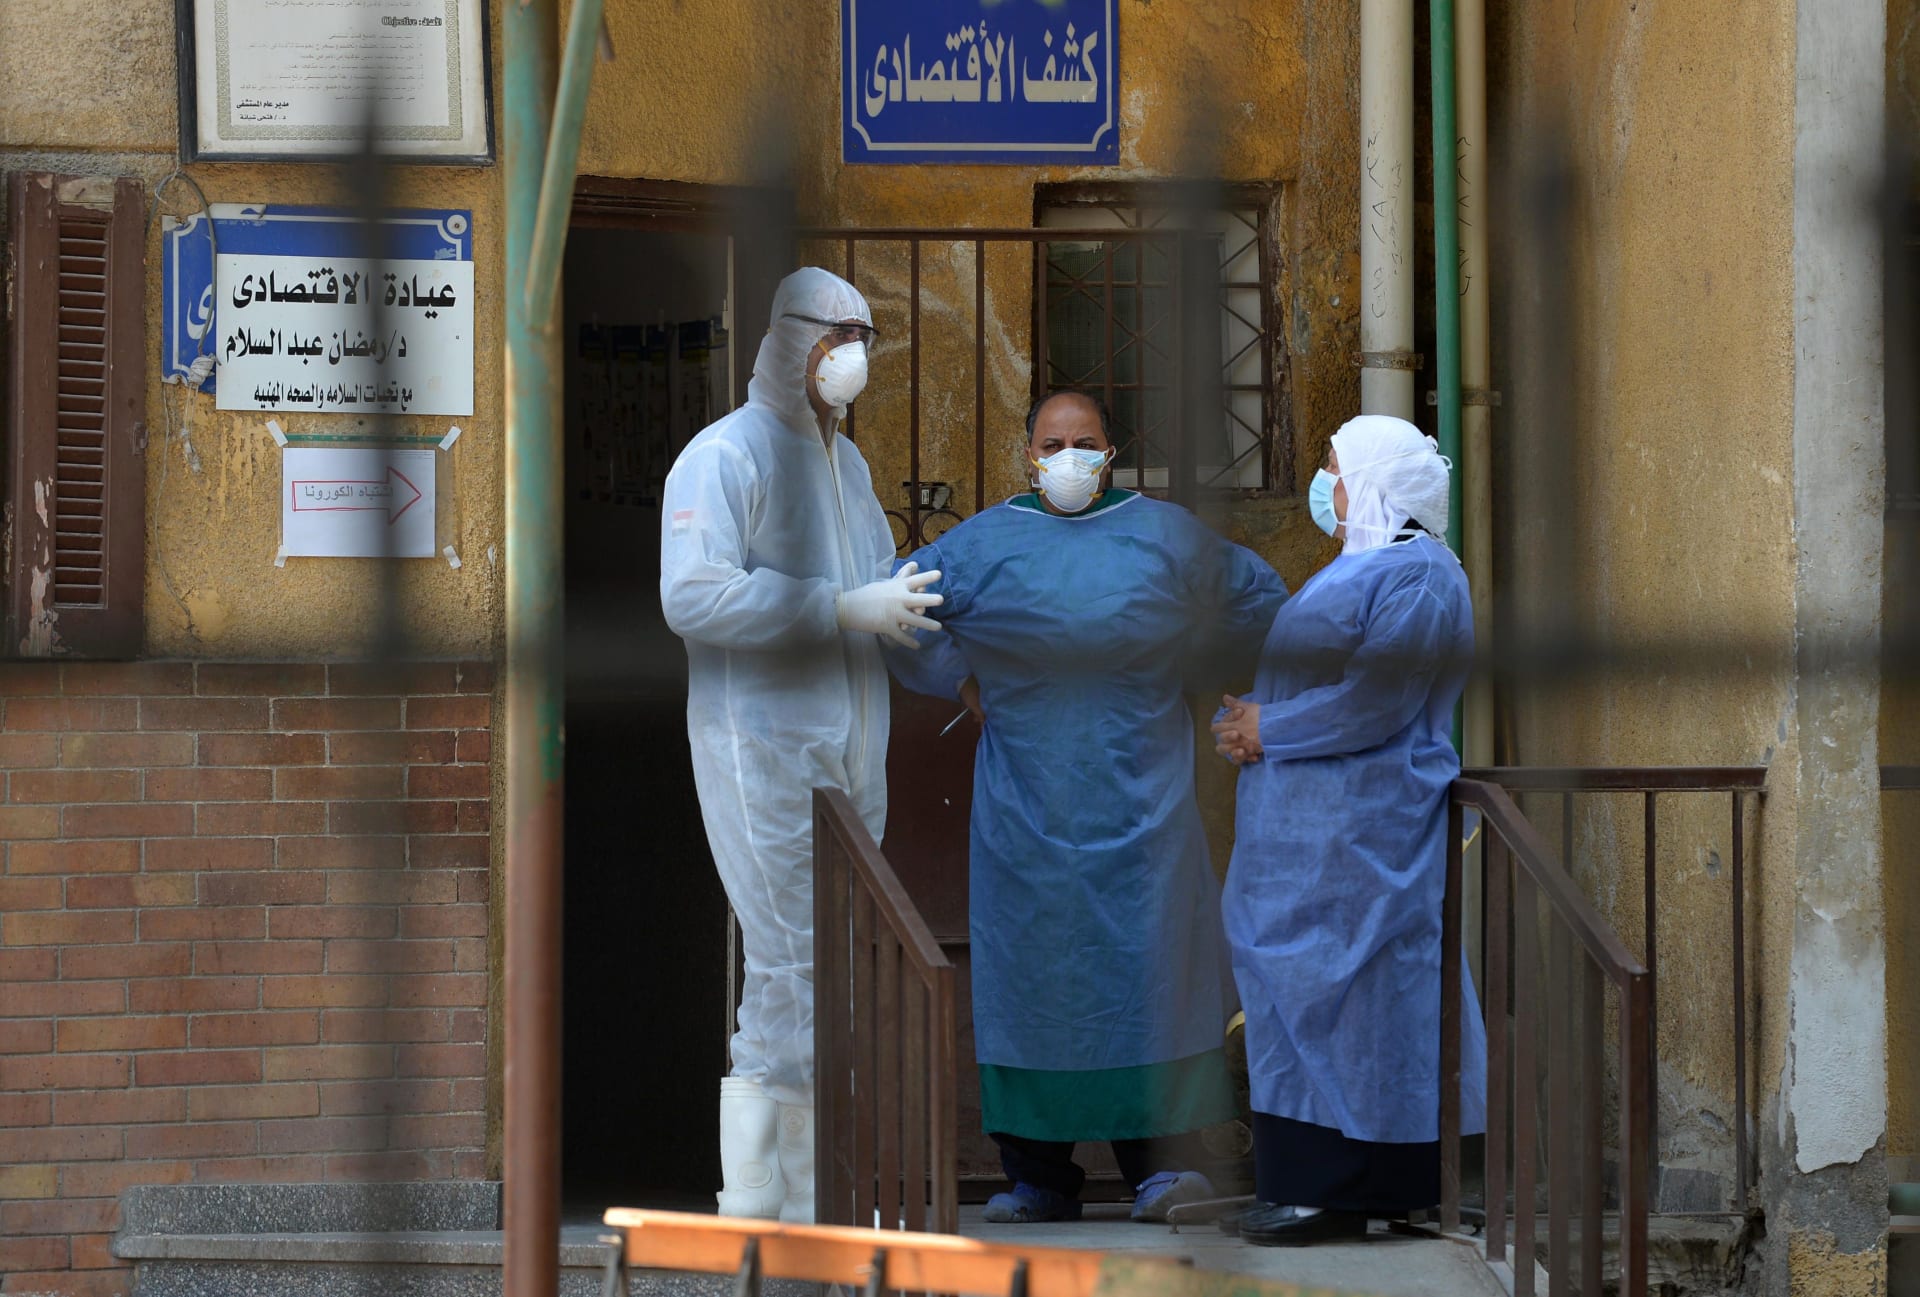 مصر تسجل أعلى معدل يومي لإصابات كورونا بزيادة 510 حالة.. و18 وفاة